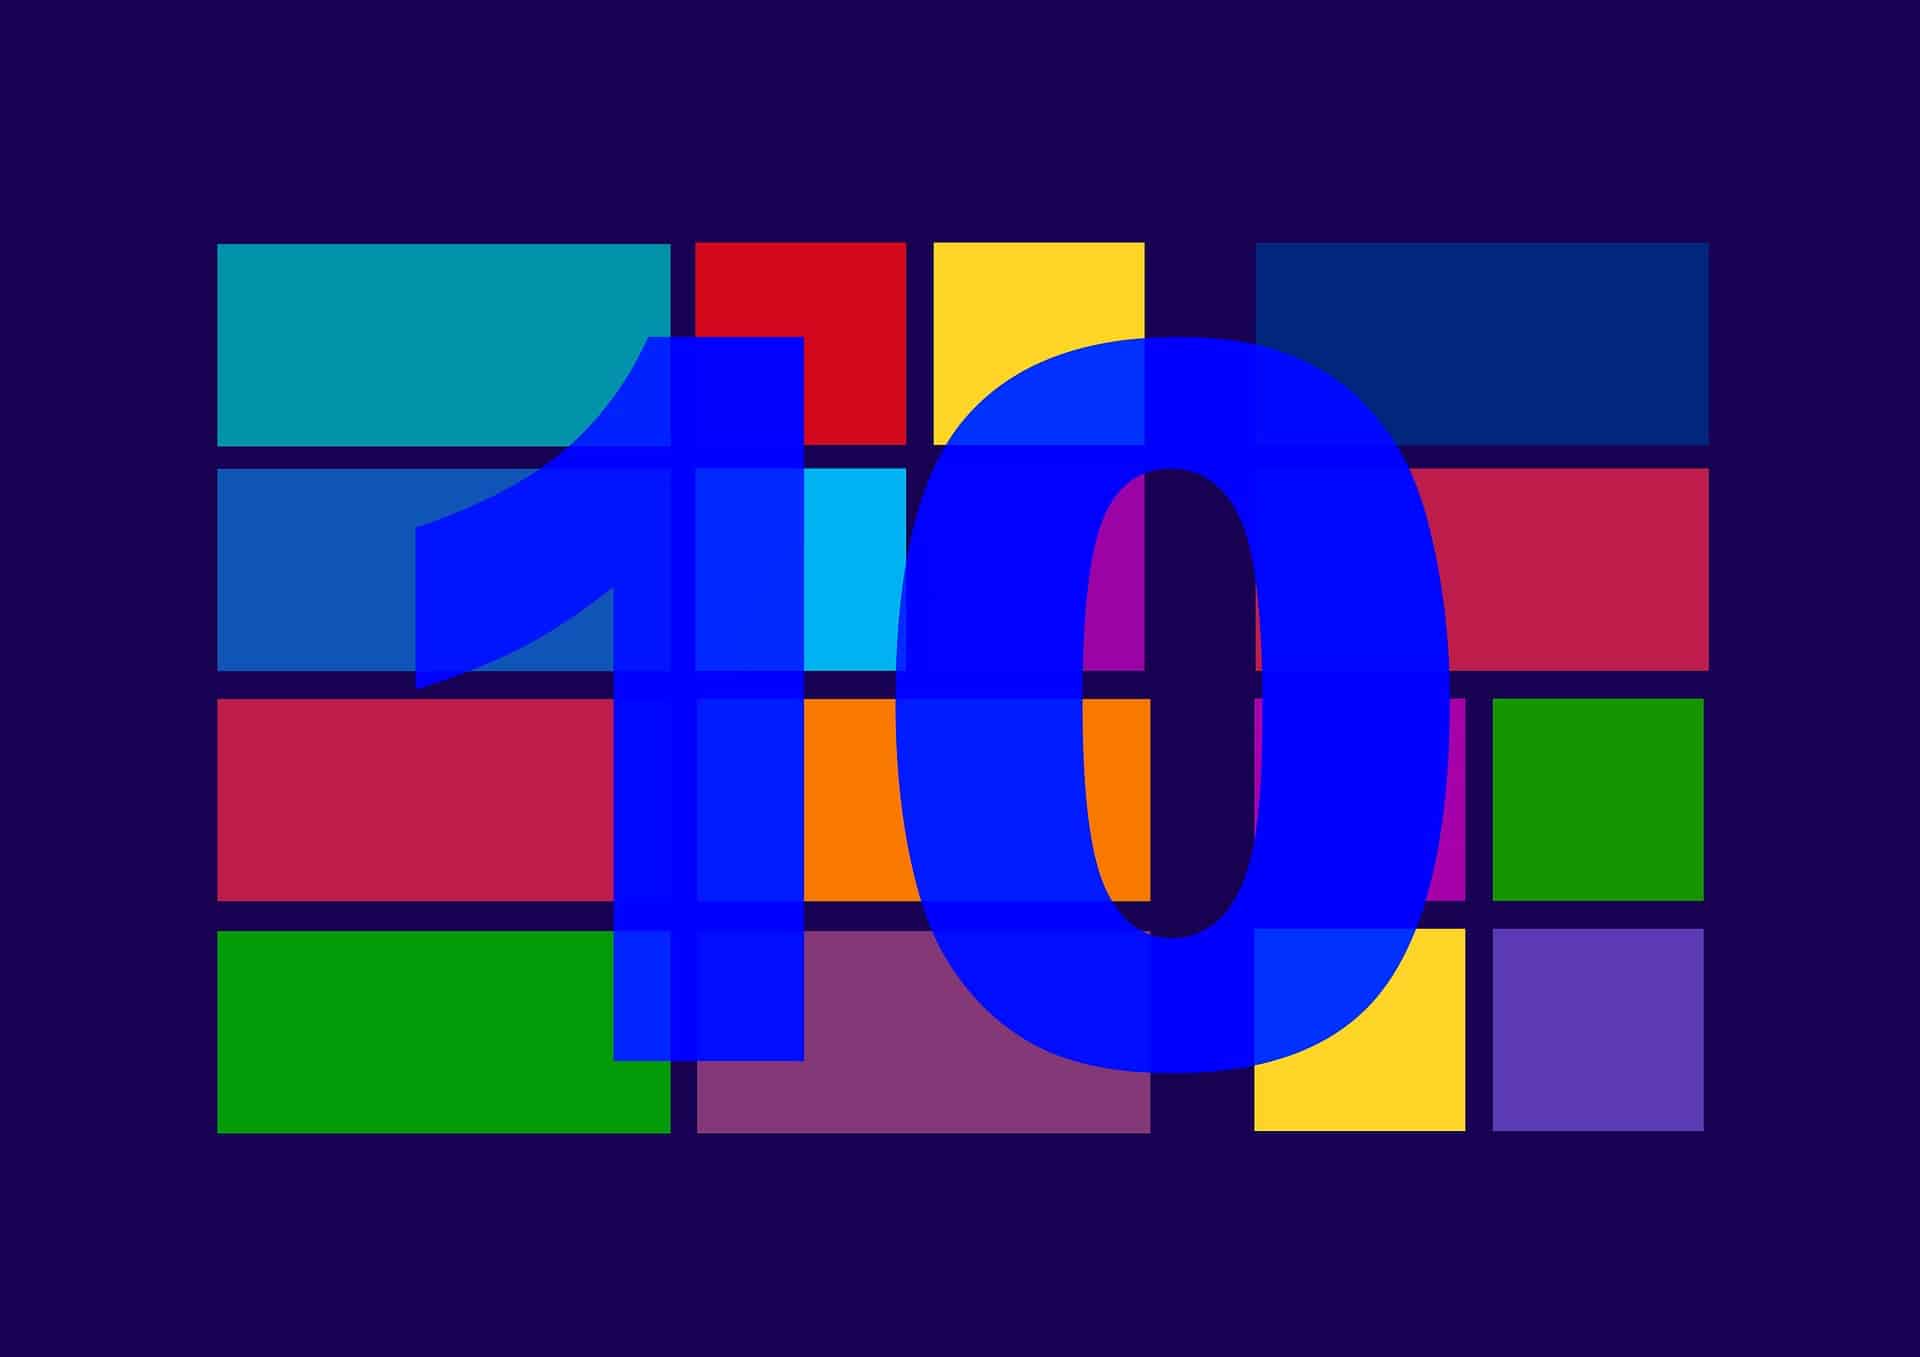 Comment installer les codecs HEVC gratuits sur Windows 10 (vidéos H.265)